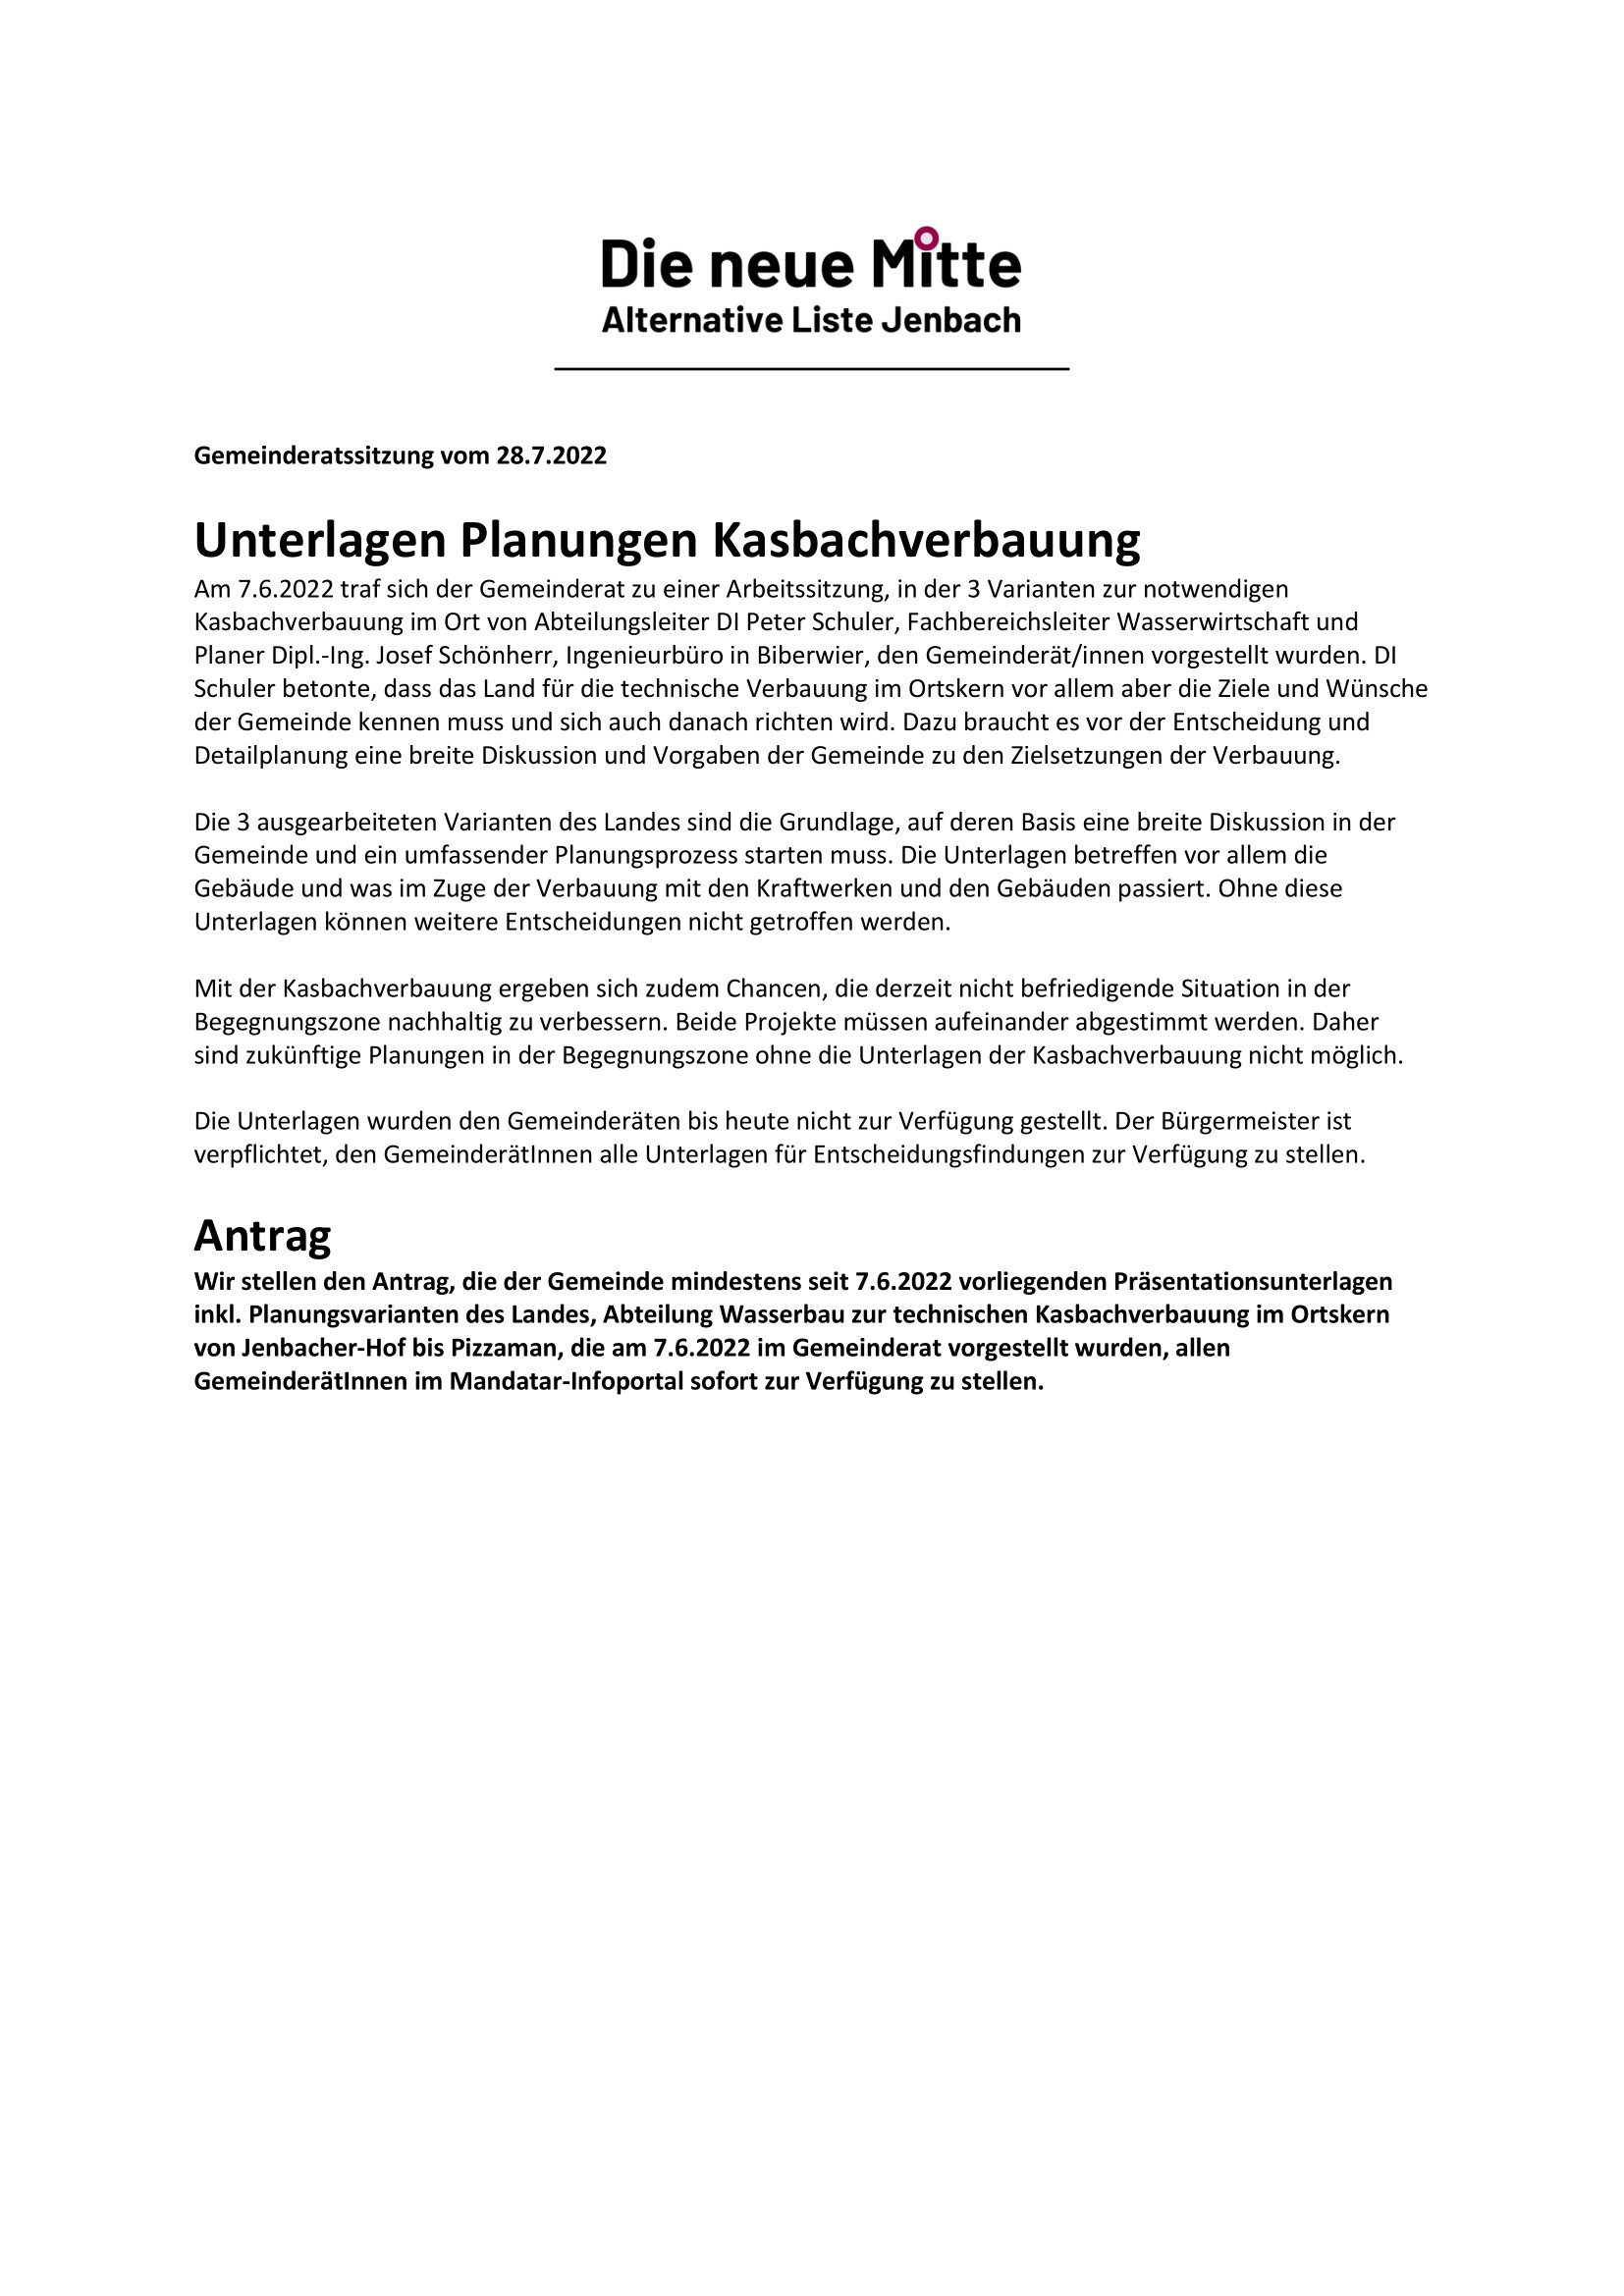 Antrag Unterlagen Planungen Kasbachverbauung